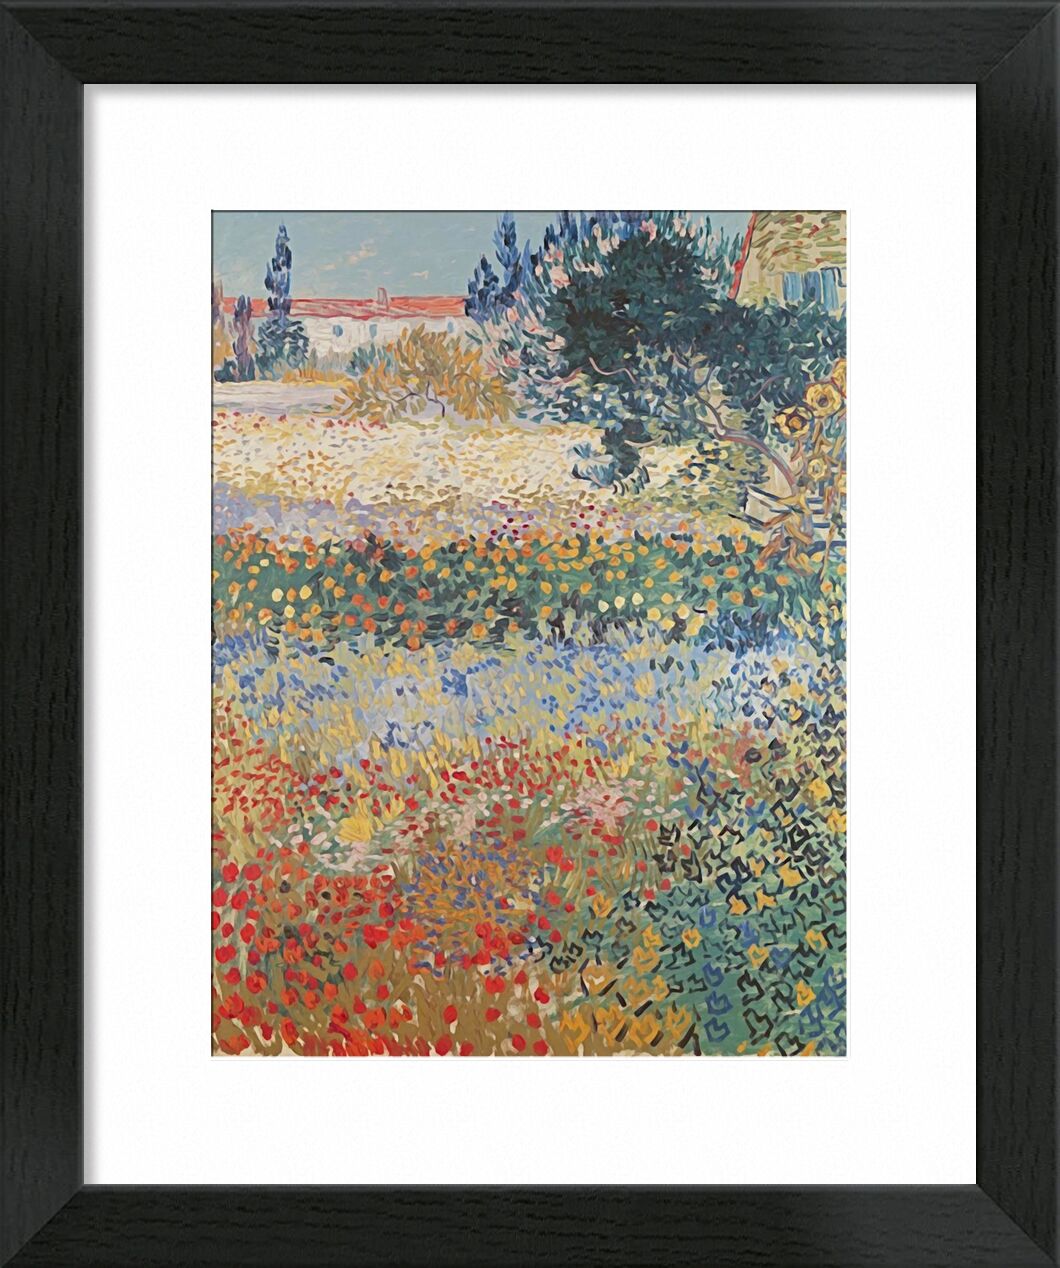 Garden in Bloom Arles - Van Gogh desde Bellas artes, Prodi Art, jardín, flores, paisaje, pintura, Van gogh